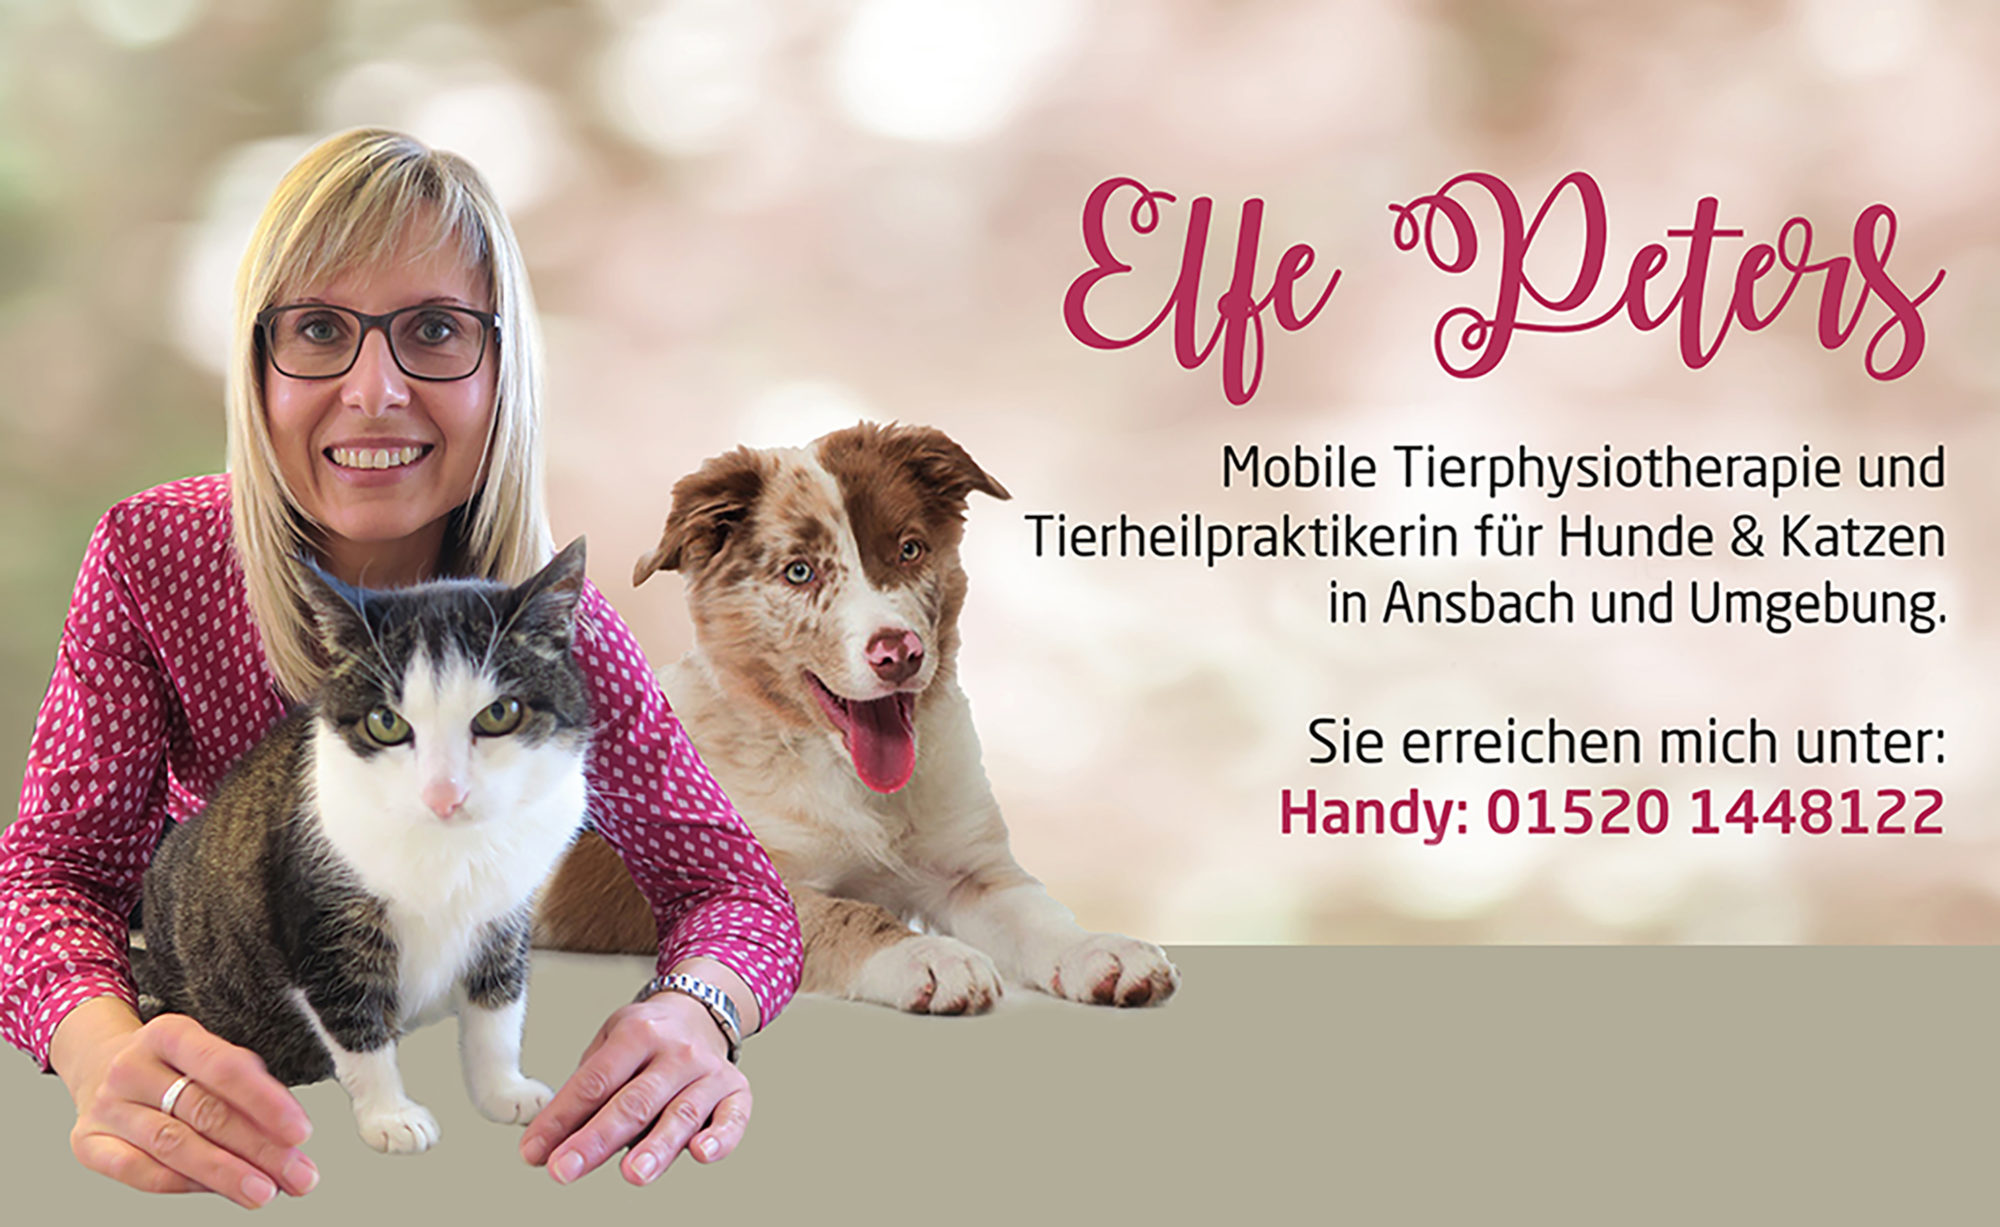 Mobile Tierphysiotherapie für Hunde und Katzen